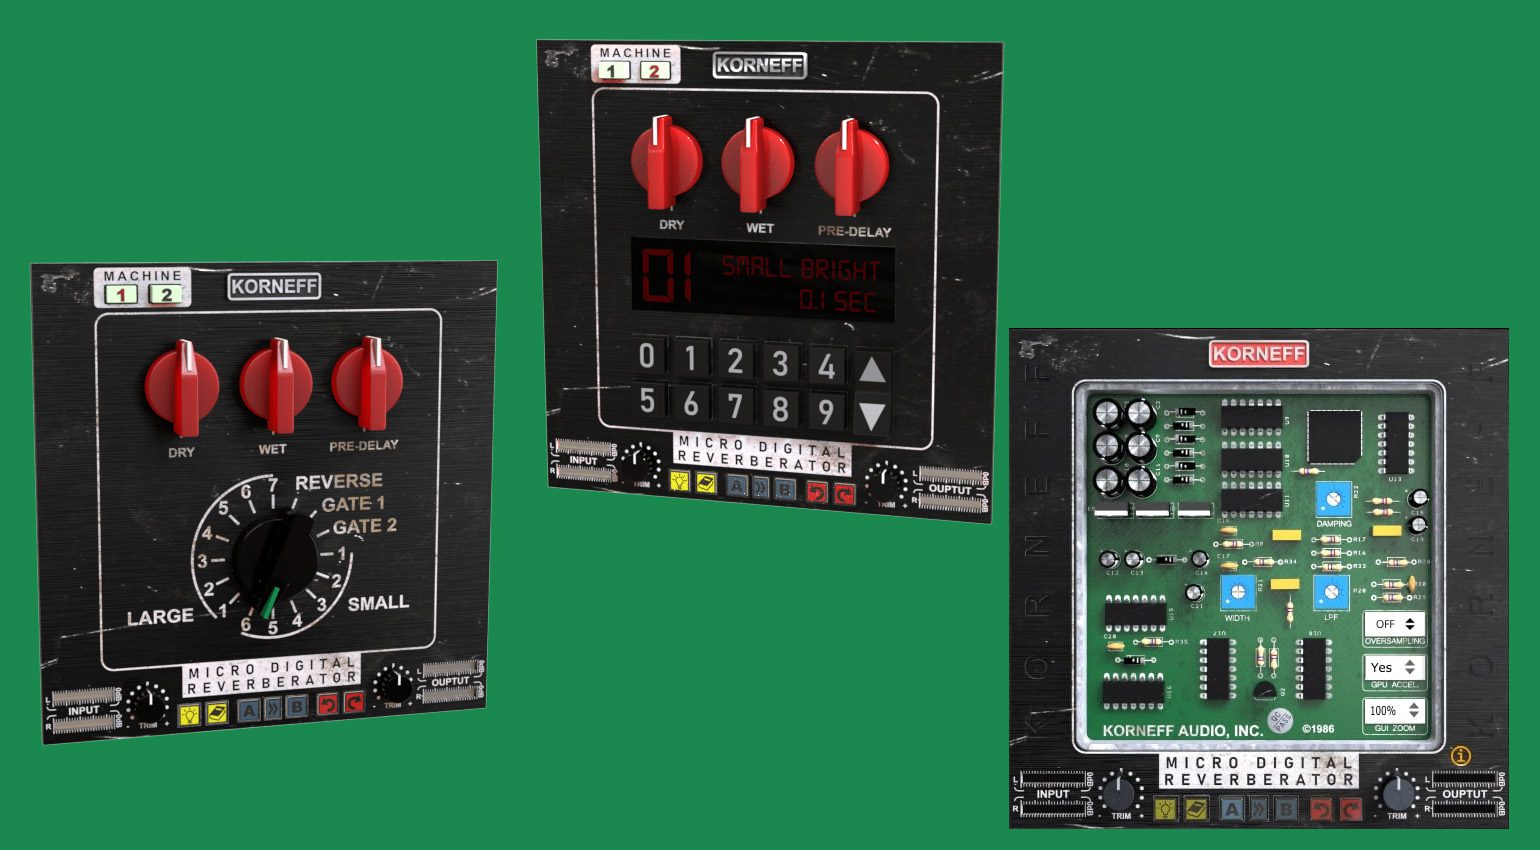 Korneff Audio veröffentlicht Micro Digital Reverberator Plug-in für 20 $